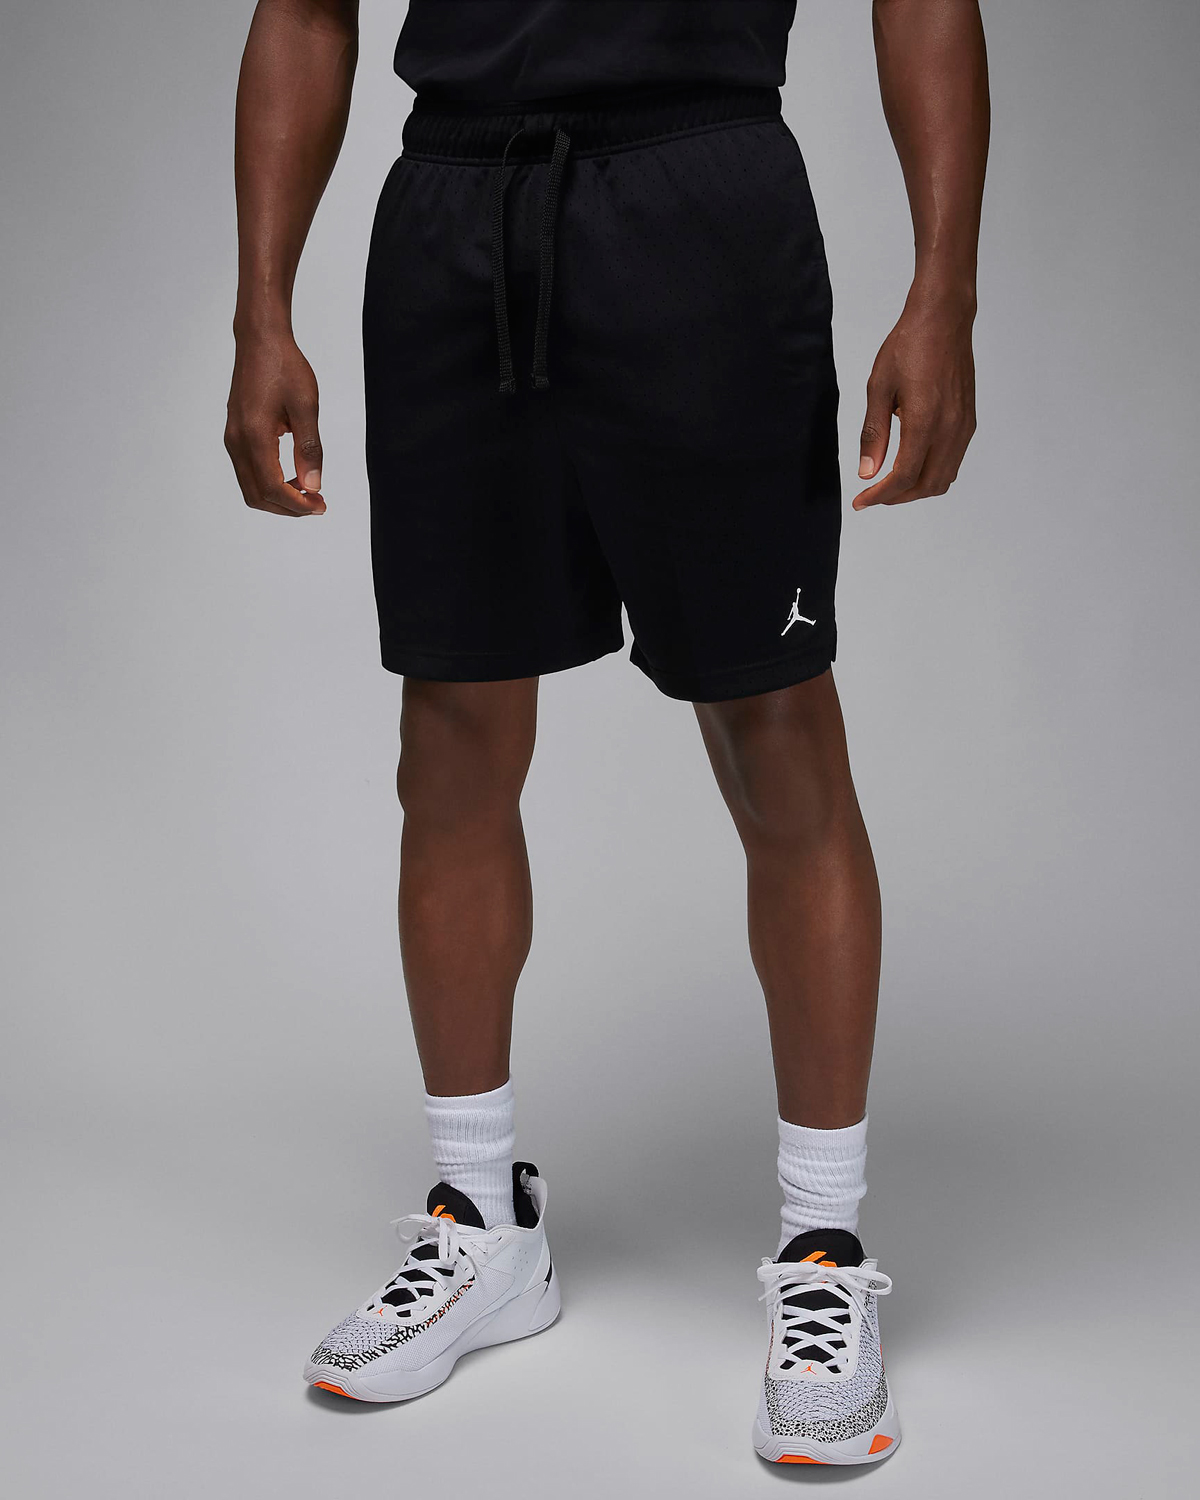 Jordan-Dri-Fit-Sport-Mesh-Shorts-Black-White-1